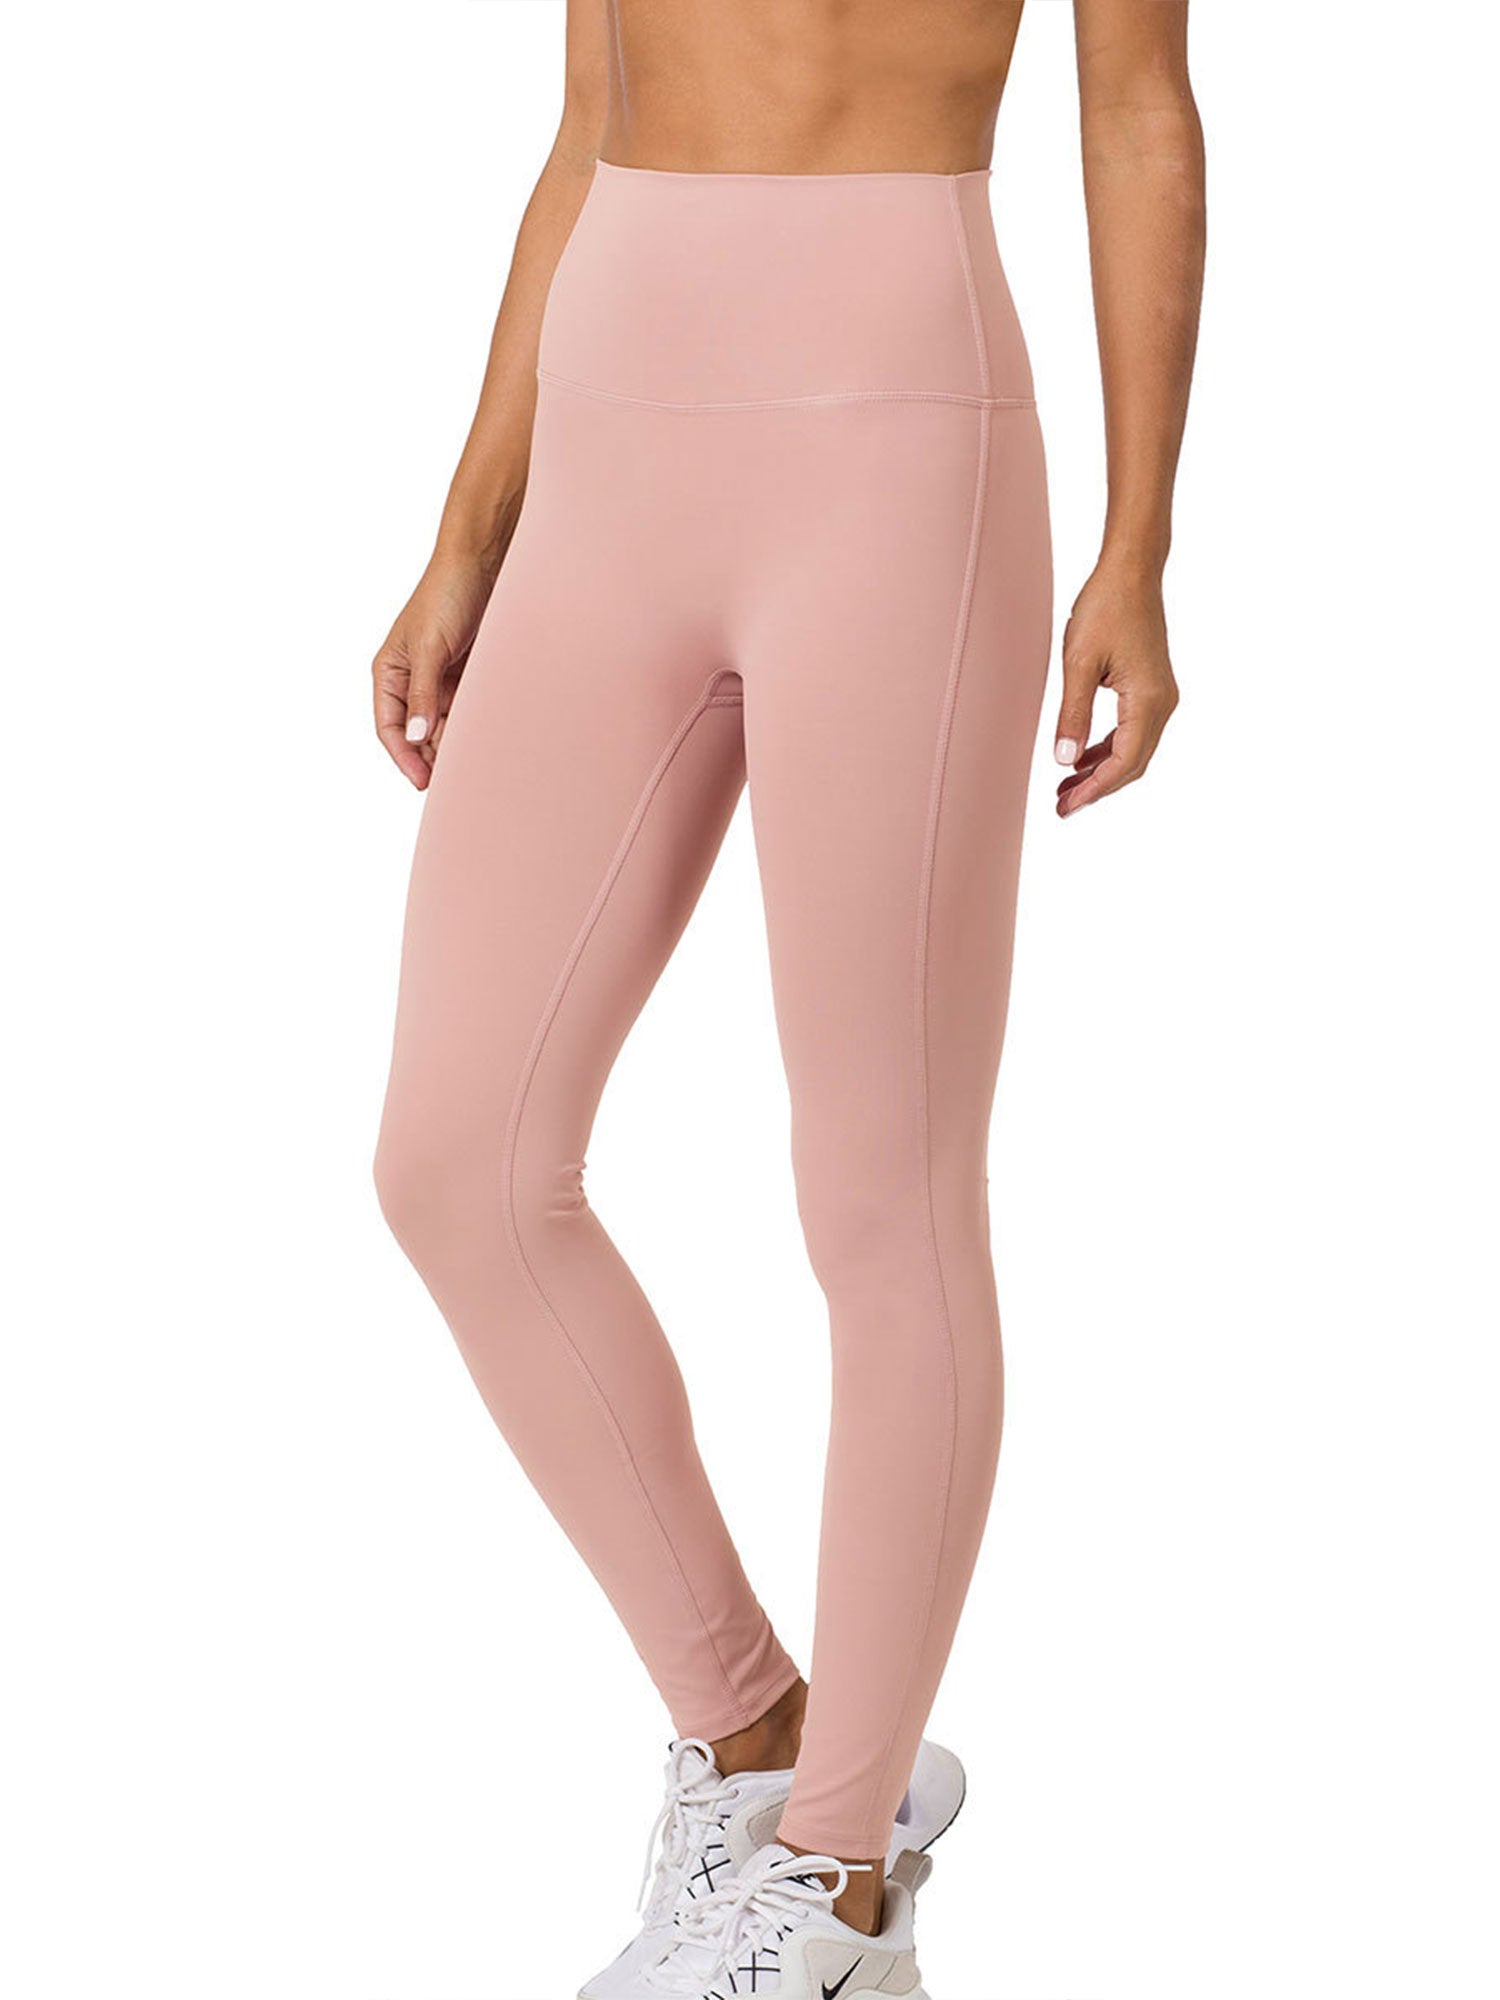 Hot Pink High Waisted Leggings - Pocket Leggings - Active Legging - Lulus